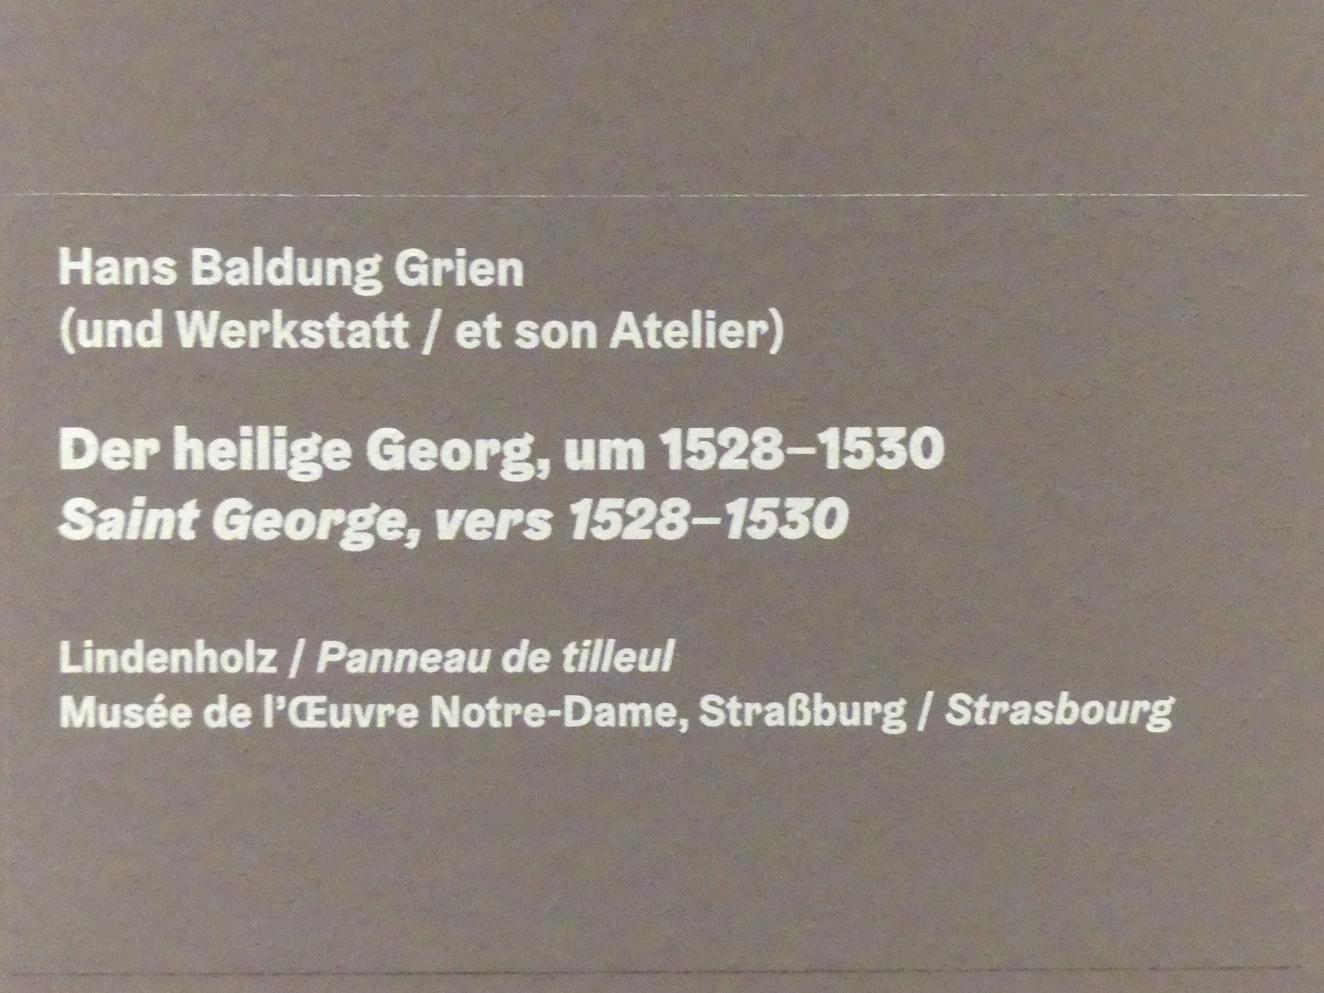 Hans Baldung Grien (1500–1544), Der heilige Georg, Karlsruhe, Staatliche Kunsthalle, Ausstellung "Hans Baldung Grien, heilig | unheilig", Saal 11, um 1528–1530, Bild 2/2